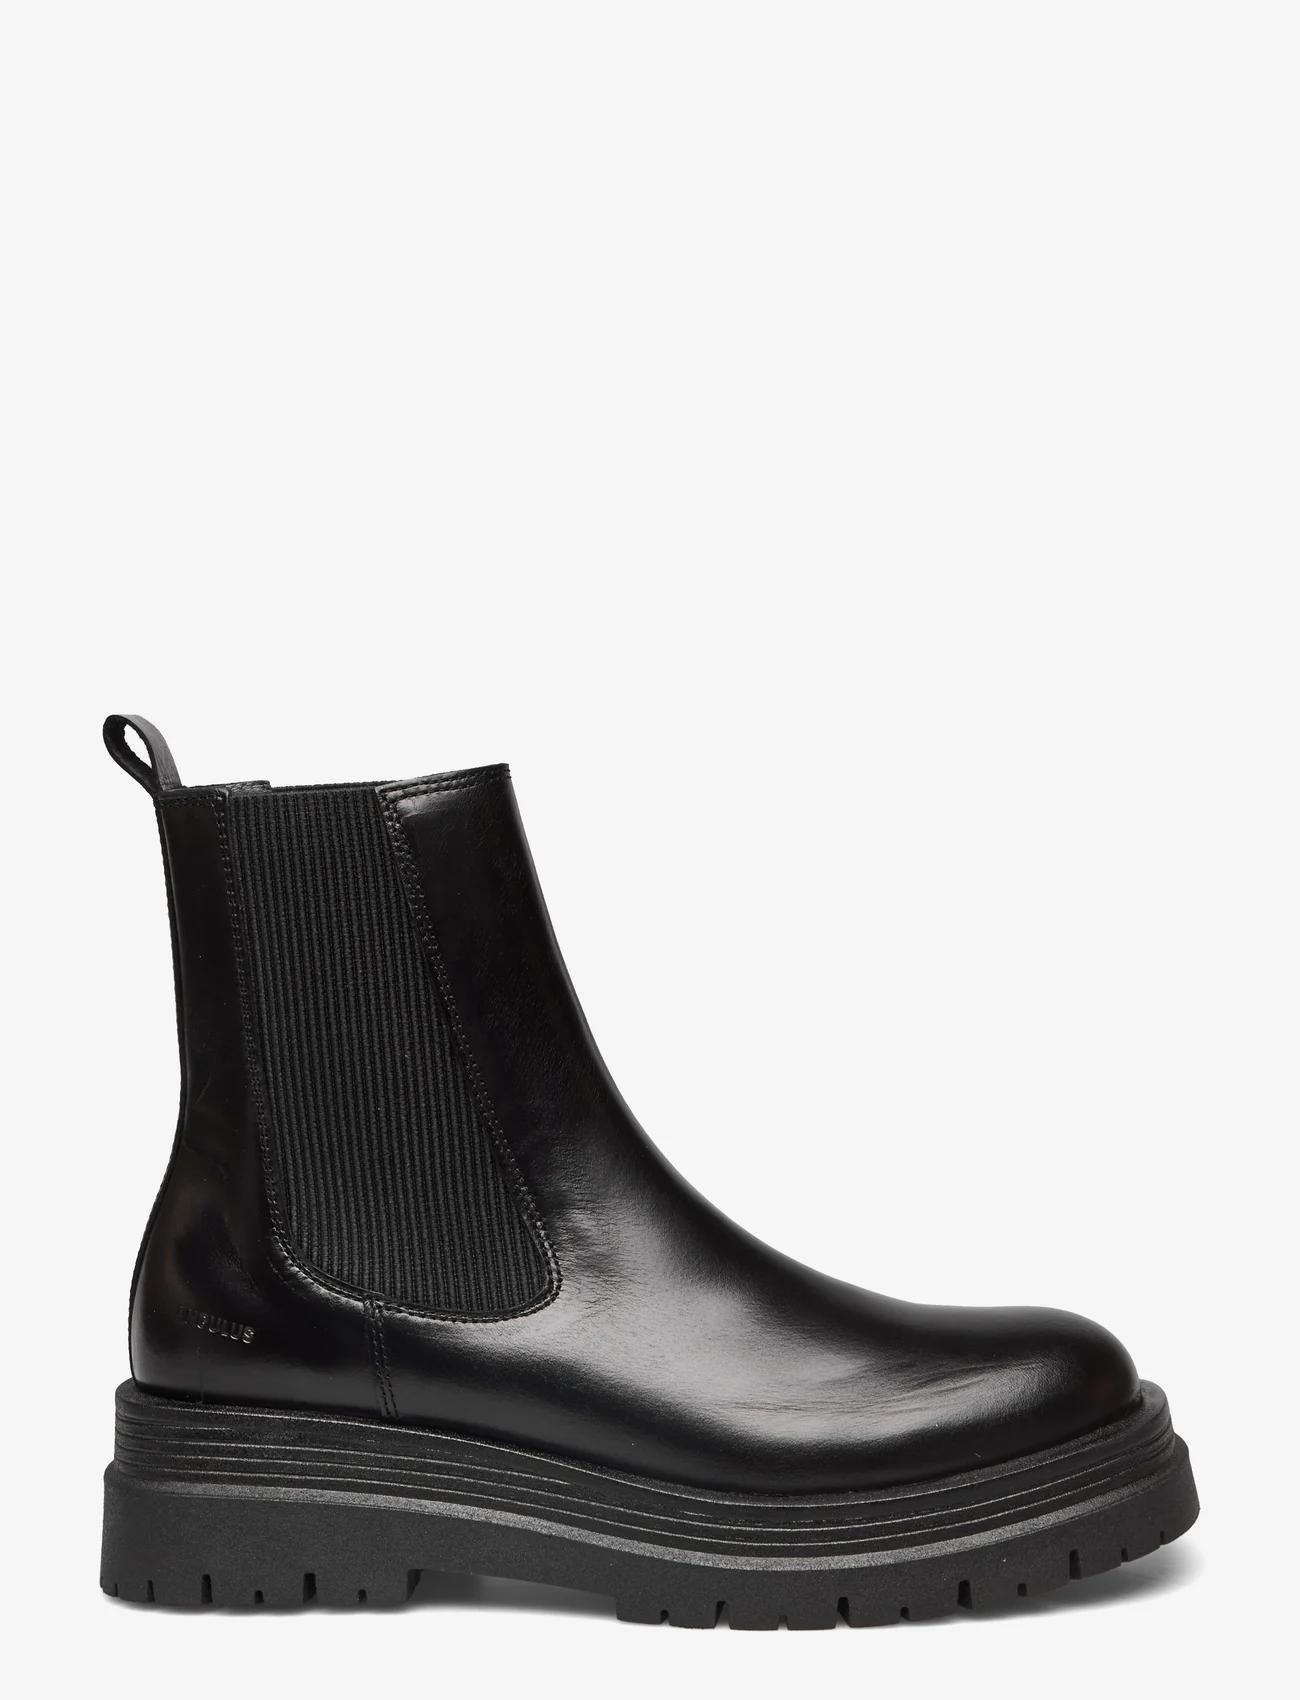 ANGULUS - Boots - flat - chelsea-saapad - 1835/019 black /black - 1